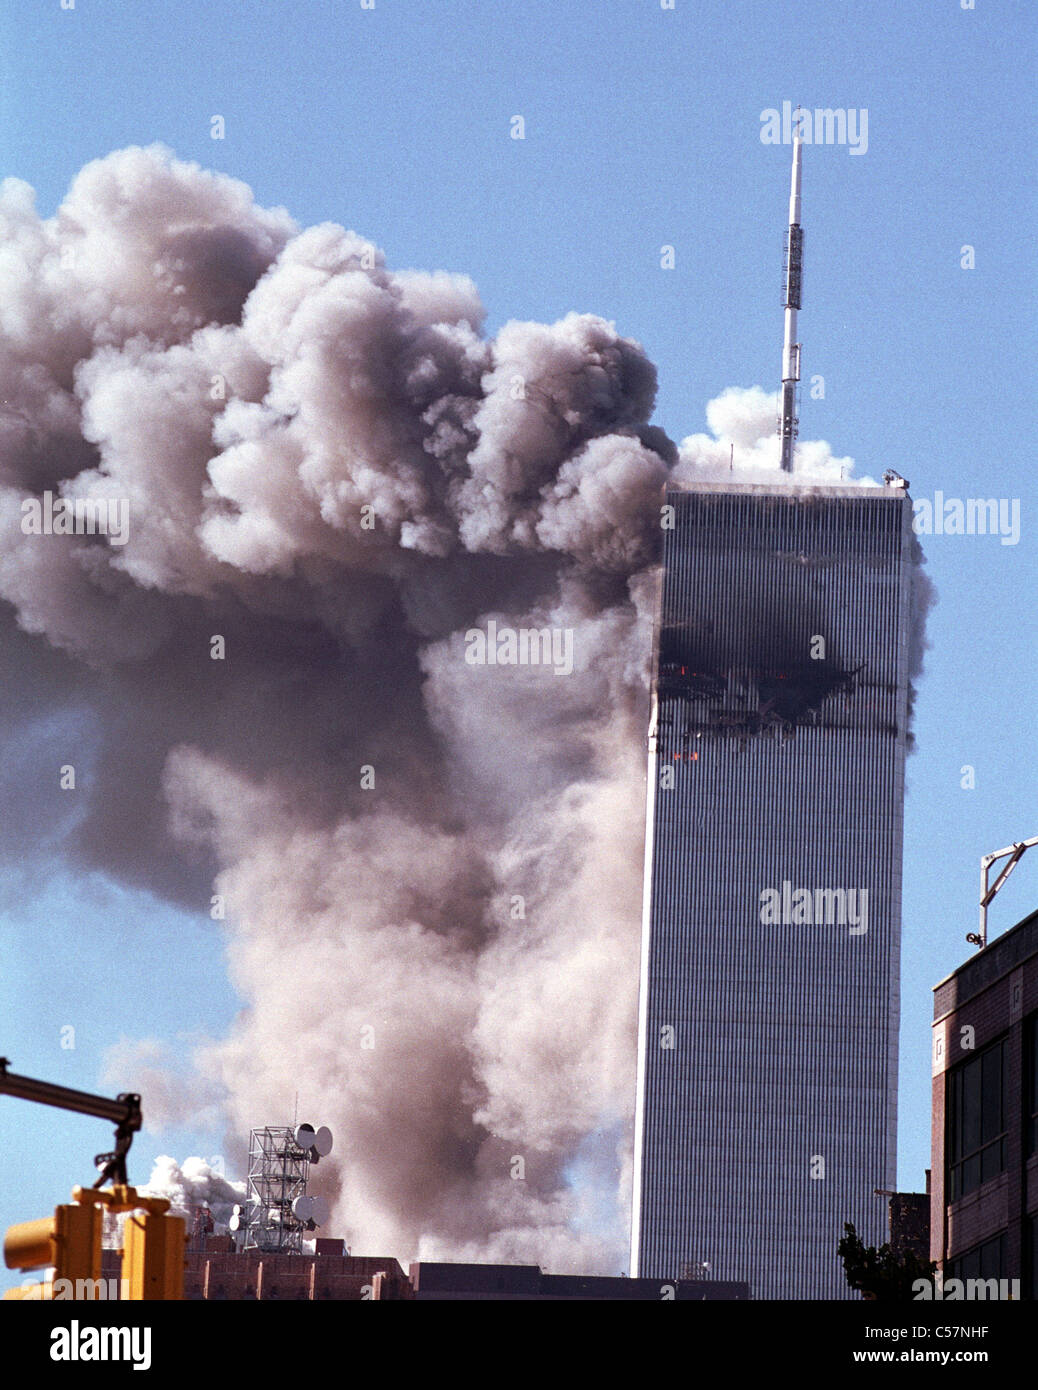 Le terrorisme World Trade Center le 11 septembre 2001. Numéro deux de la tour s'effondre Banque D'Images